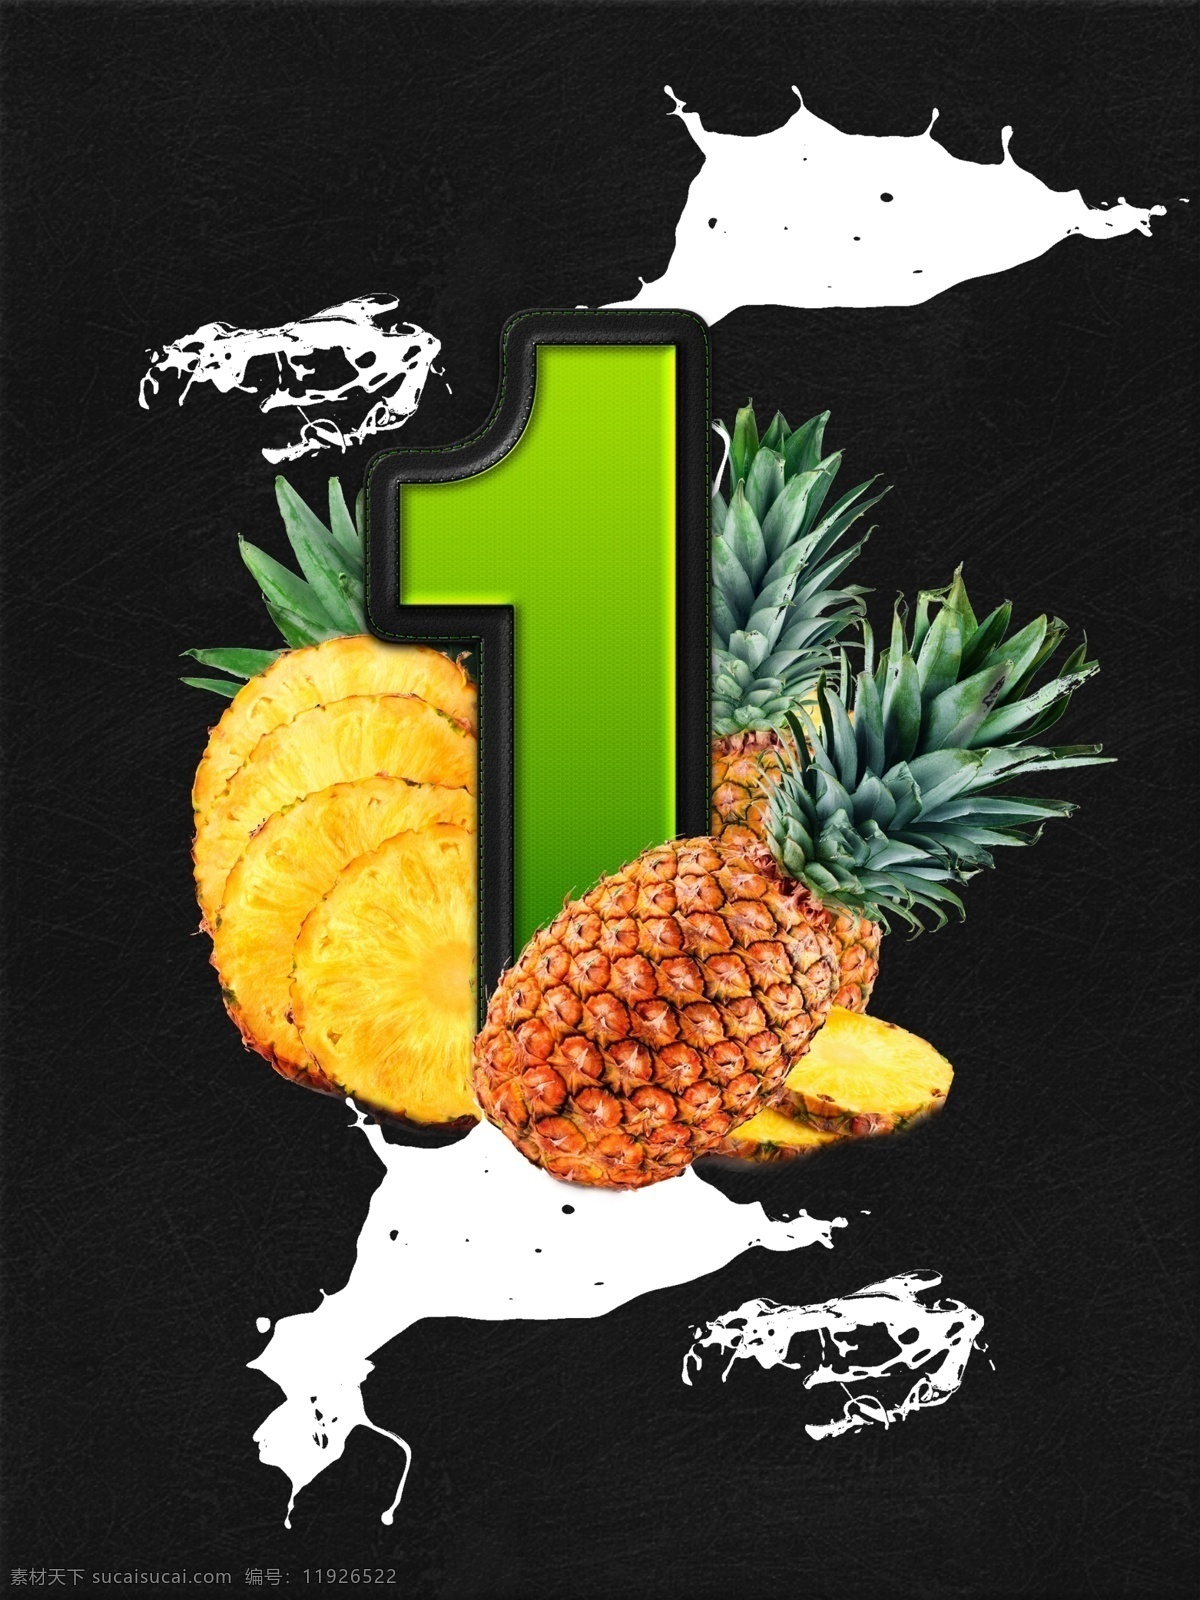 创意 水果 ps 合成 倒计时 海报 系列 简约 宣传 时尚 黑色 质感 柠檬 菠萝 草莓 数字 字体 绿色 水渍 叶子 原创